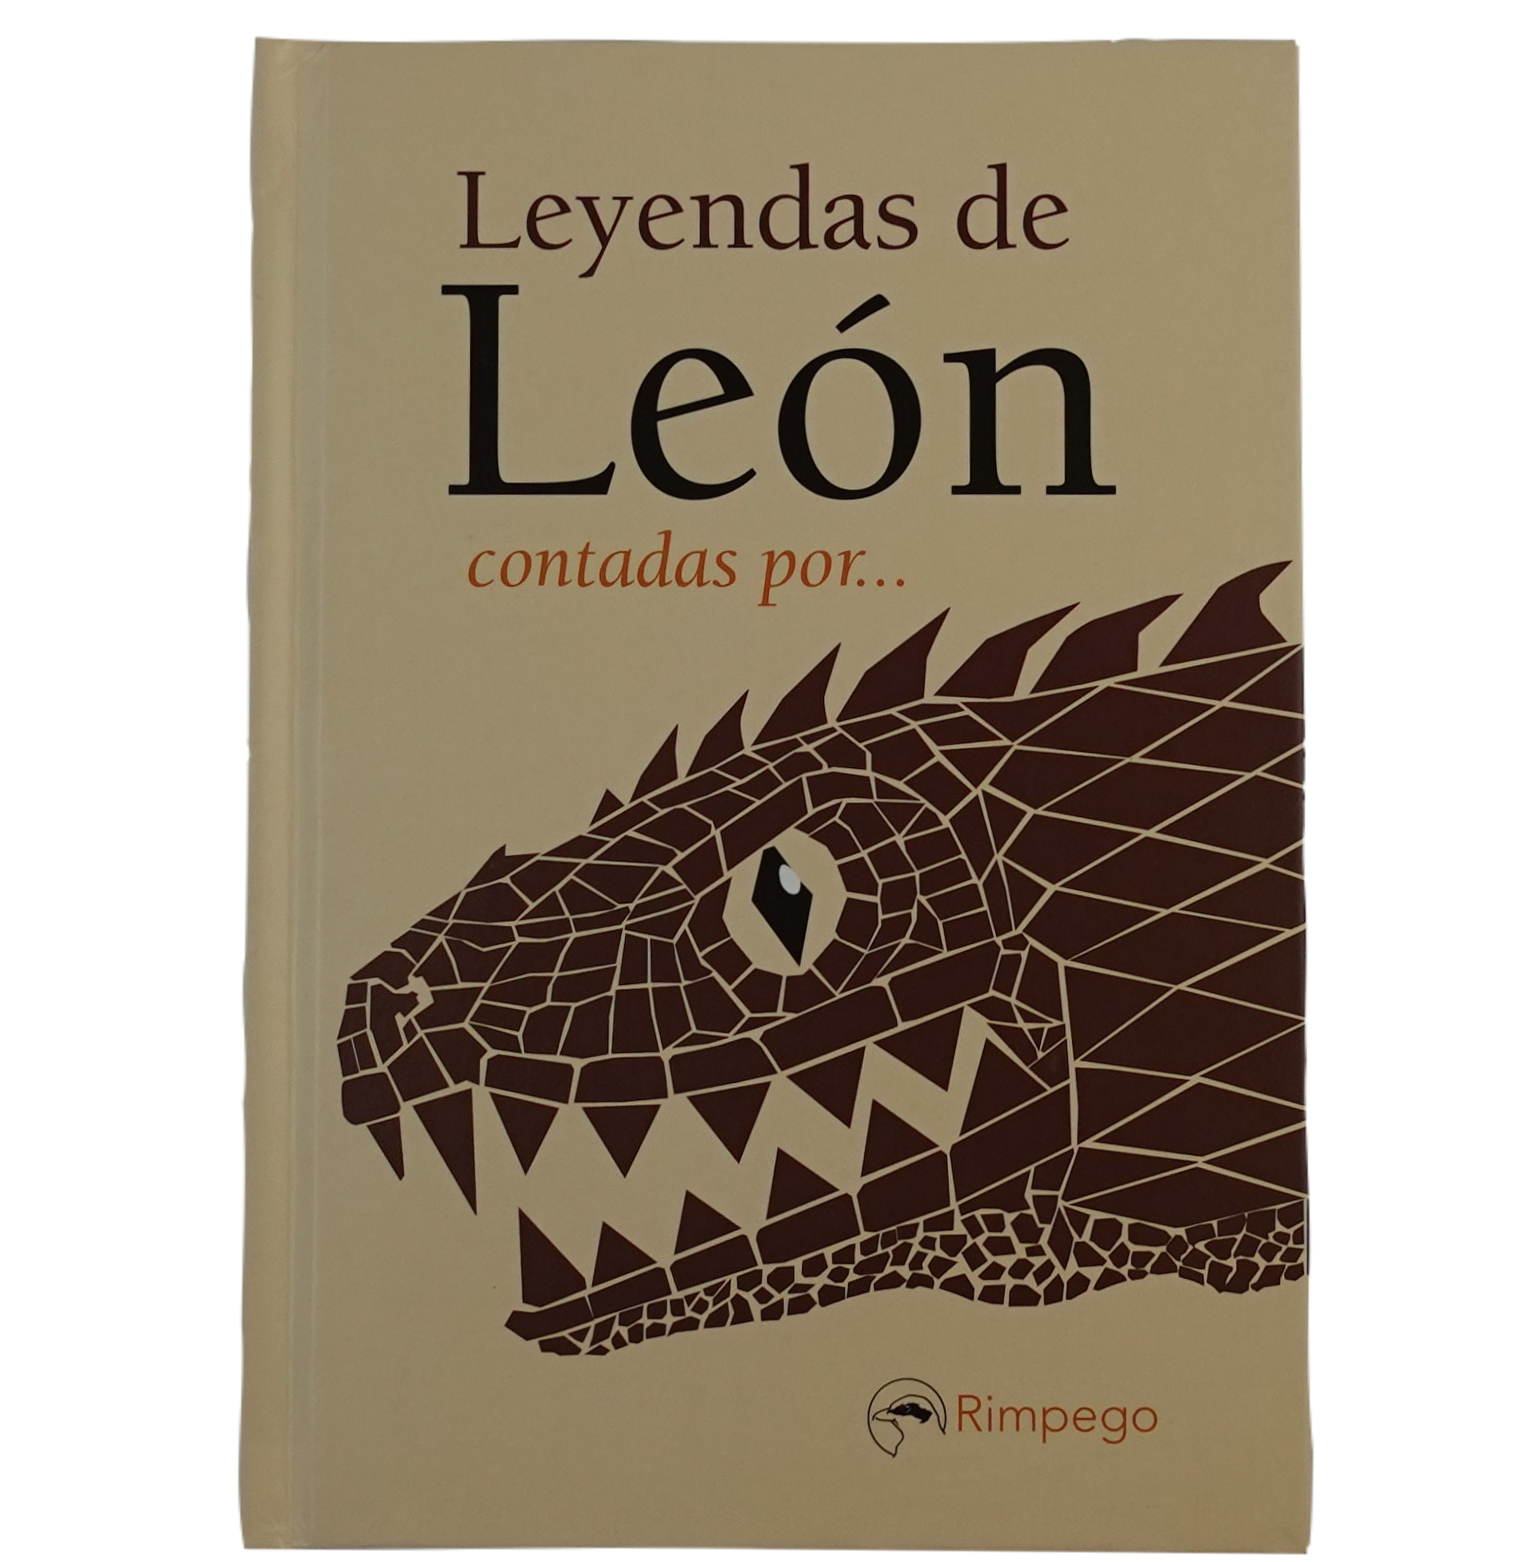 Leyendas de León contadas por…